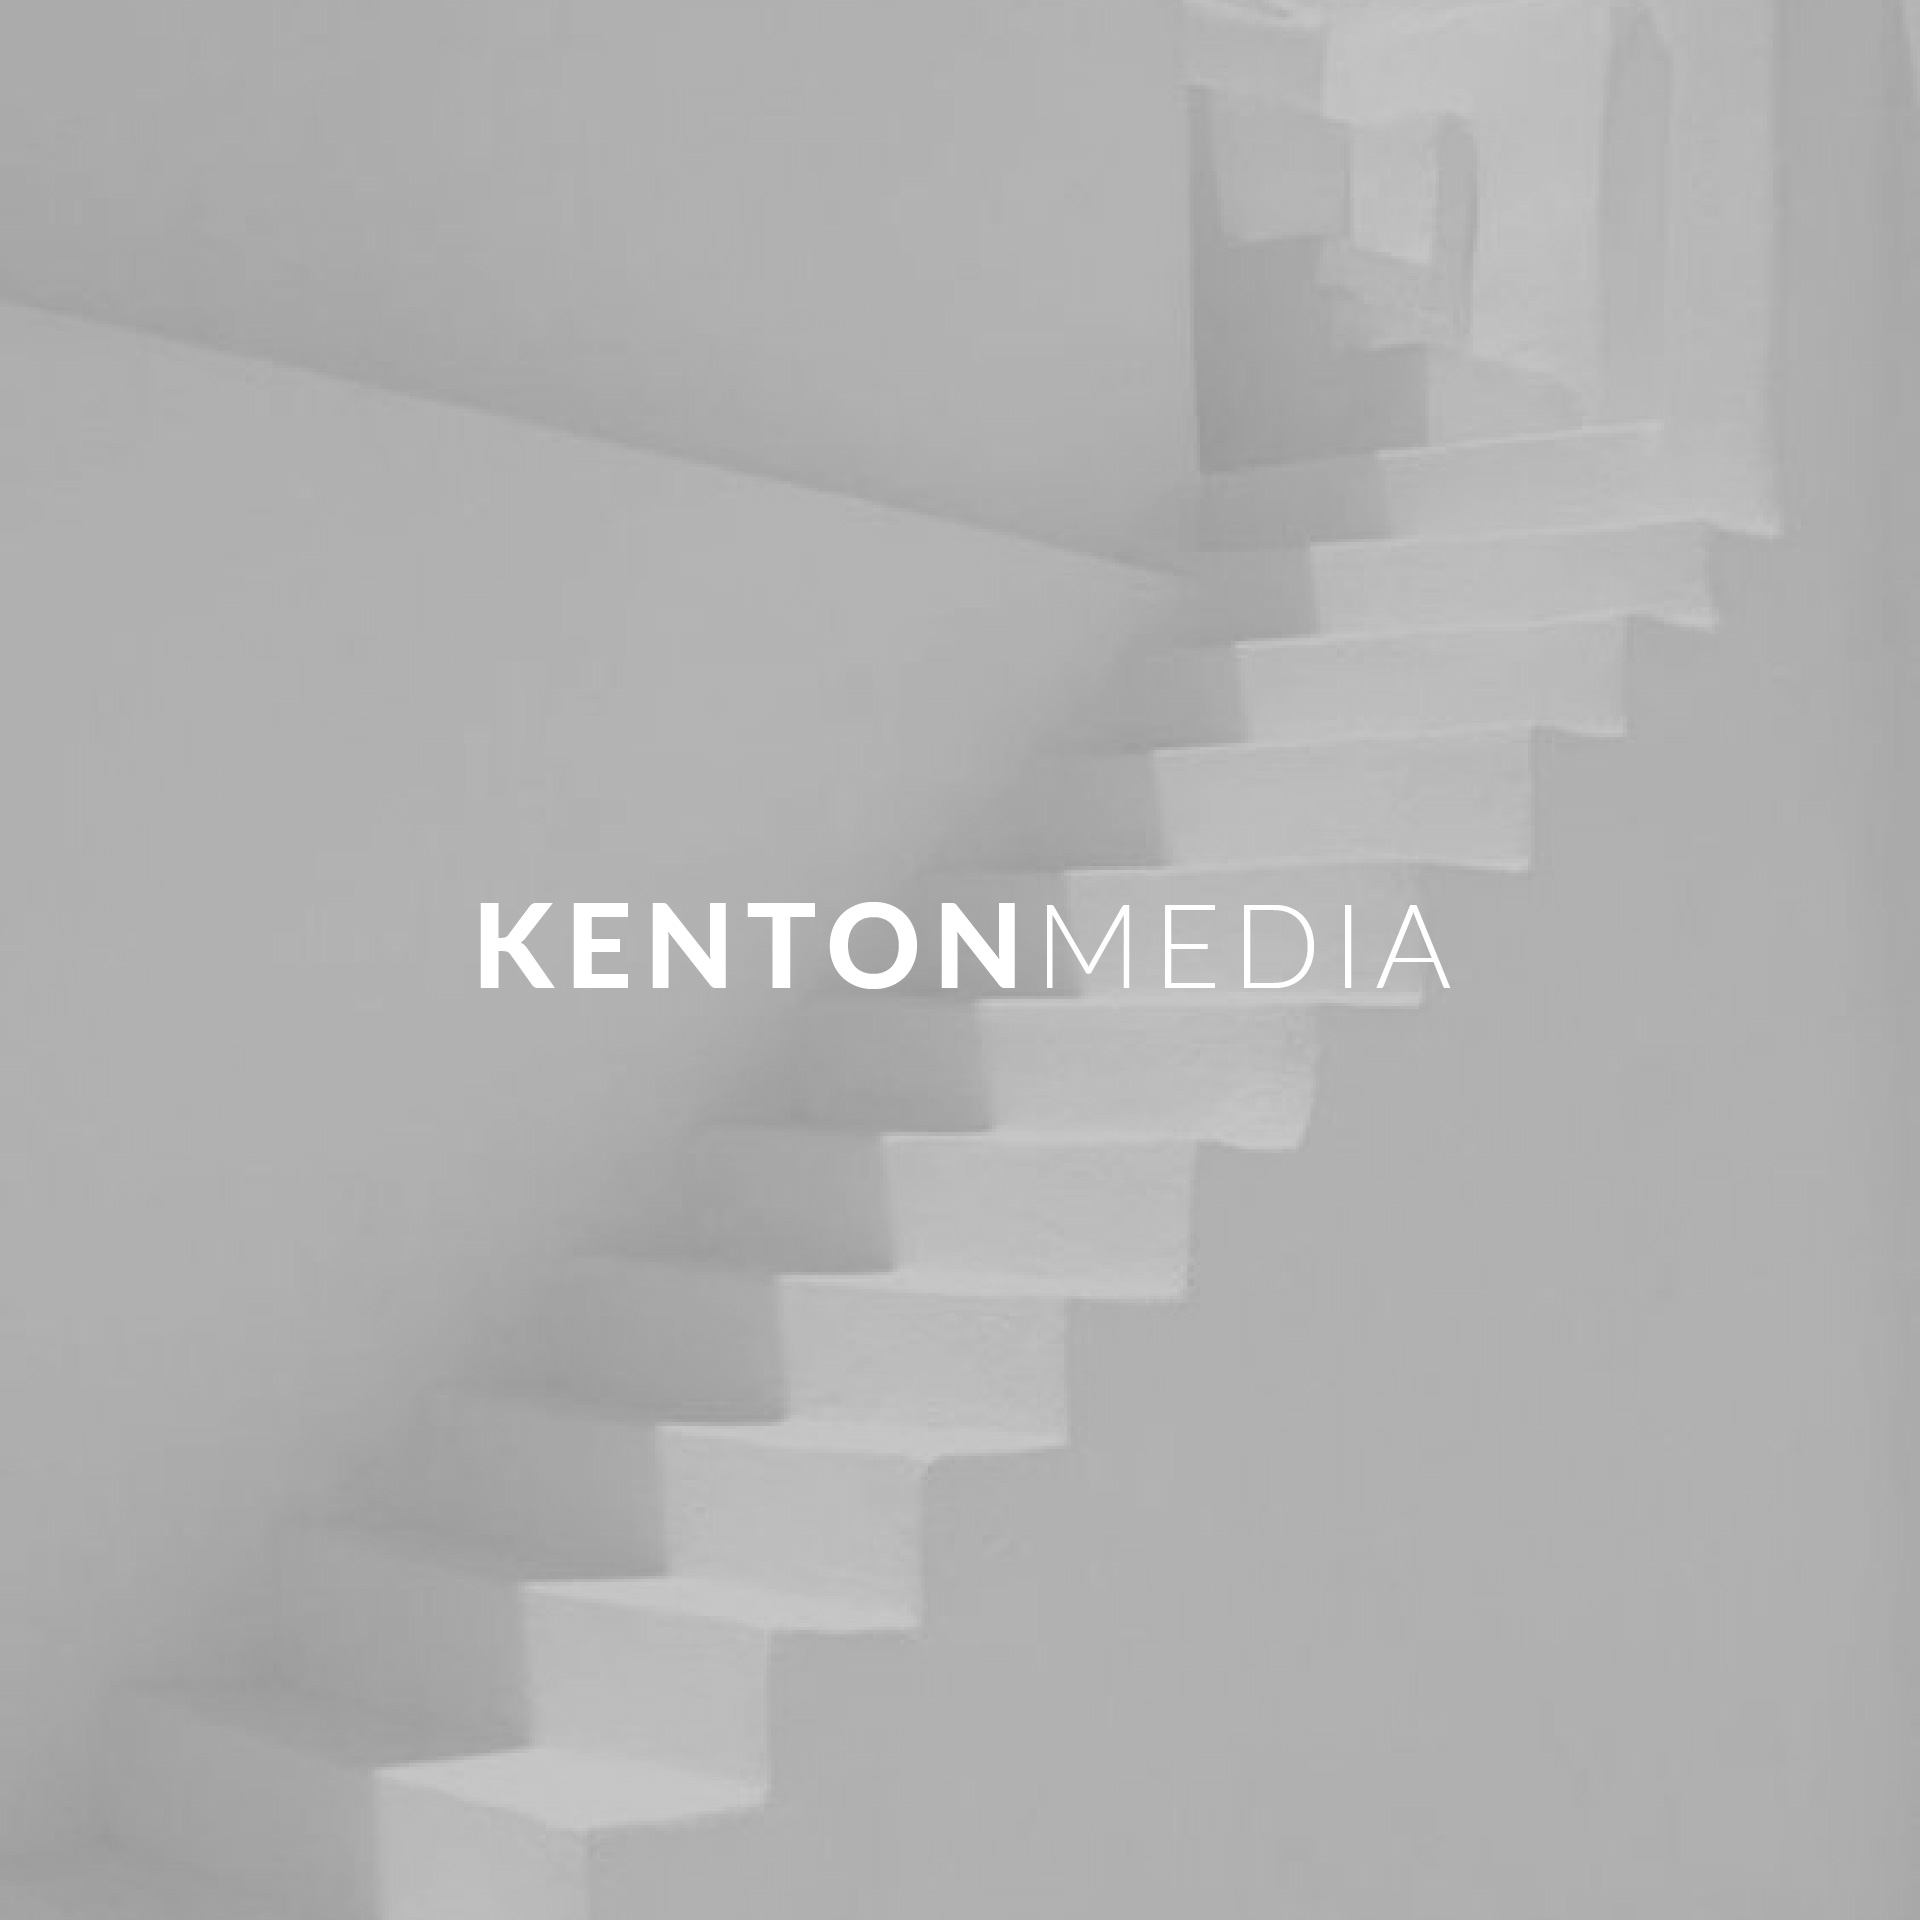 KENTON MEDIA